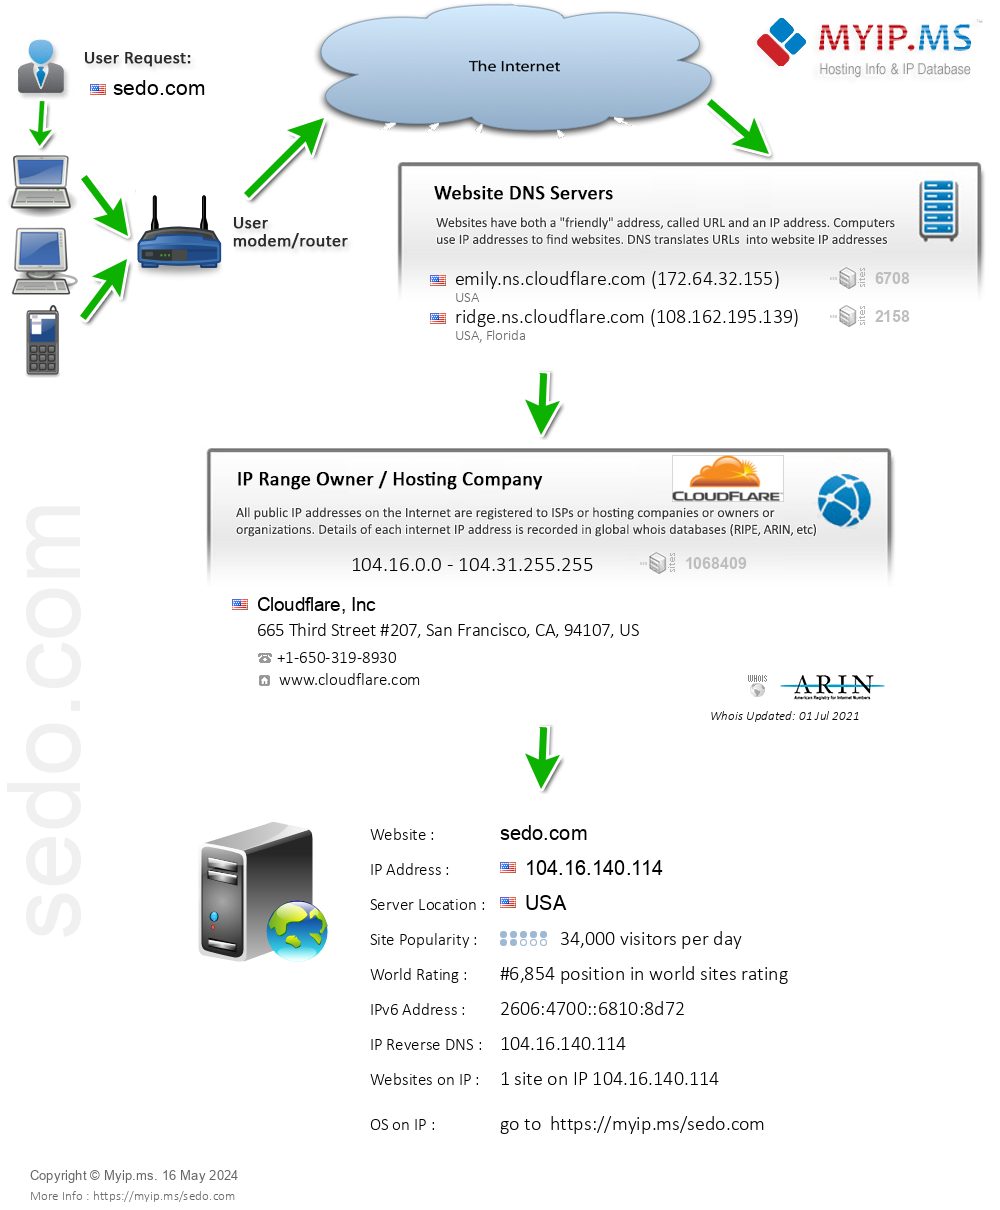 Sedo.com - Website Hosting Visual IP Diagram